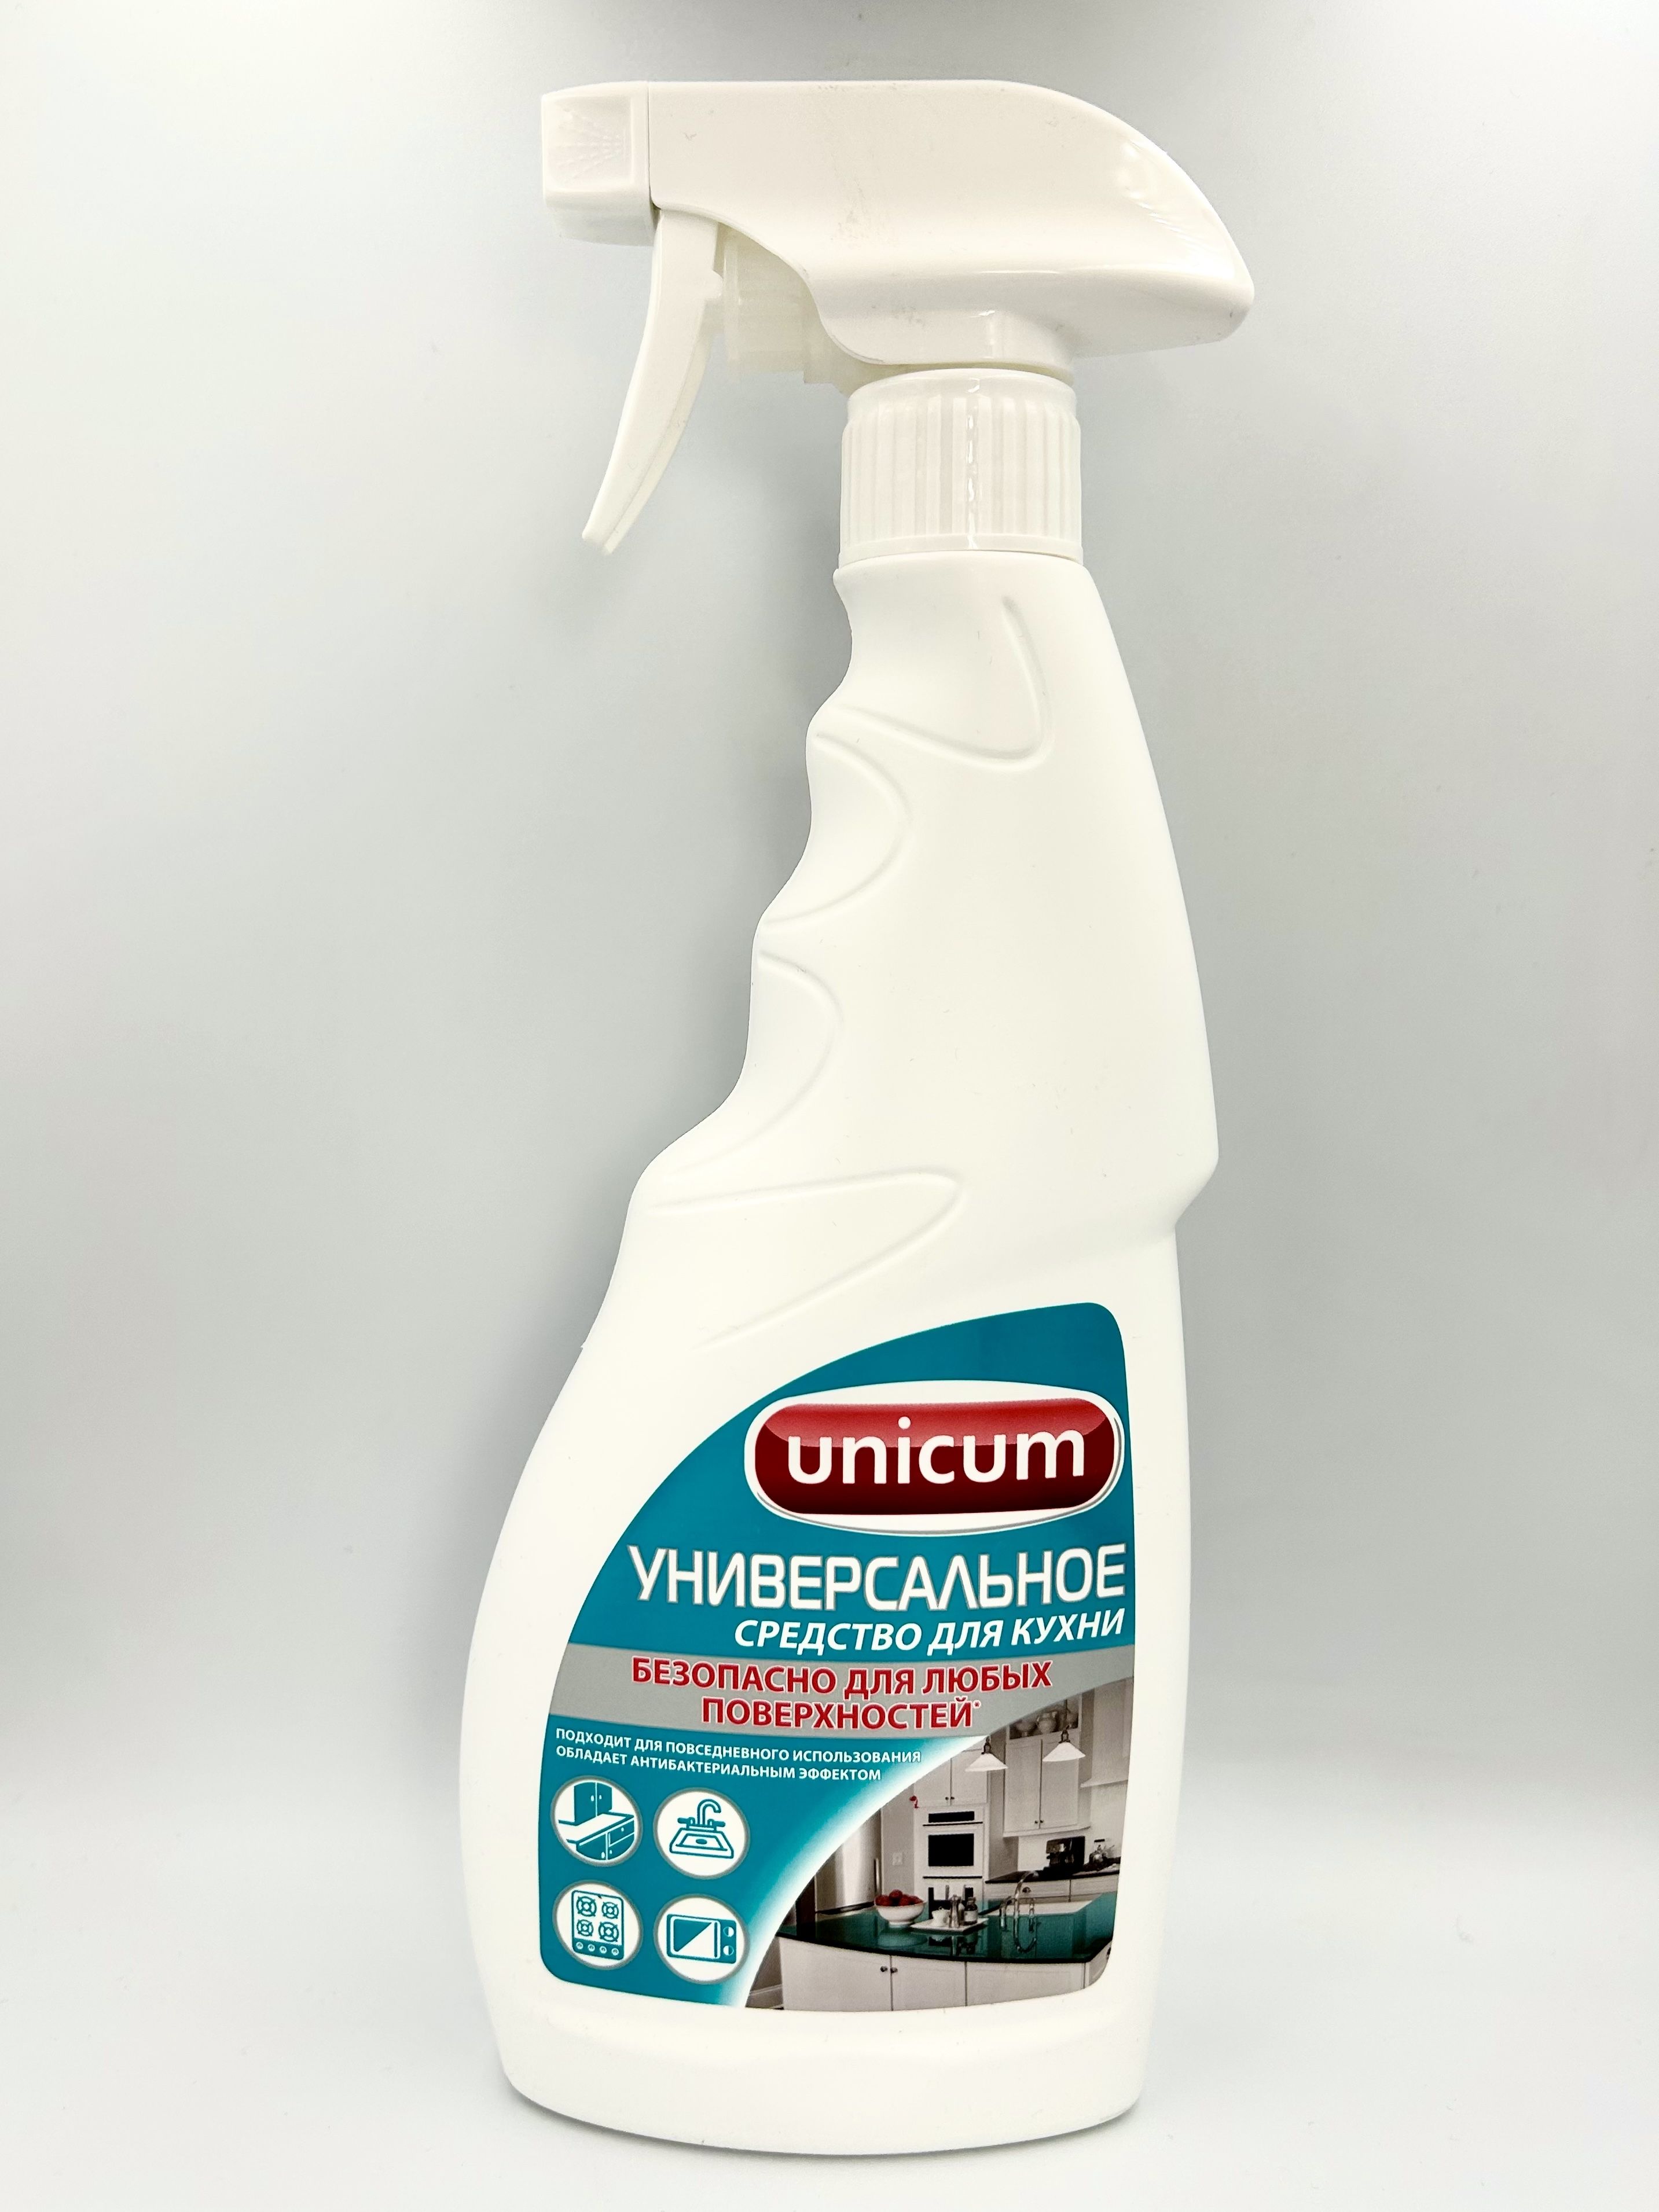 UNiCUM Универсальное моющее средство для кухни 500 мл с распылителем